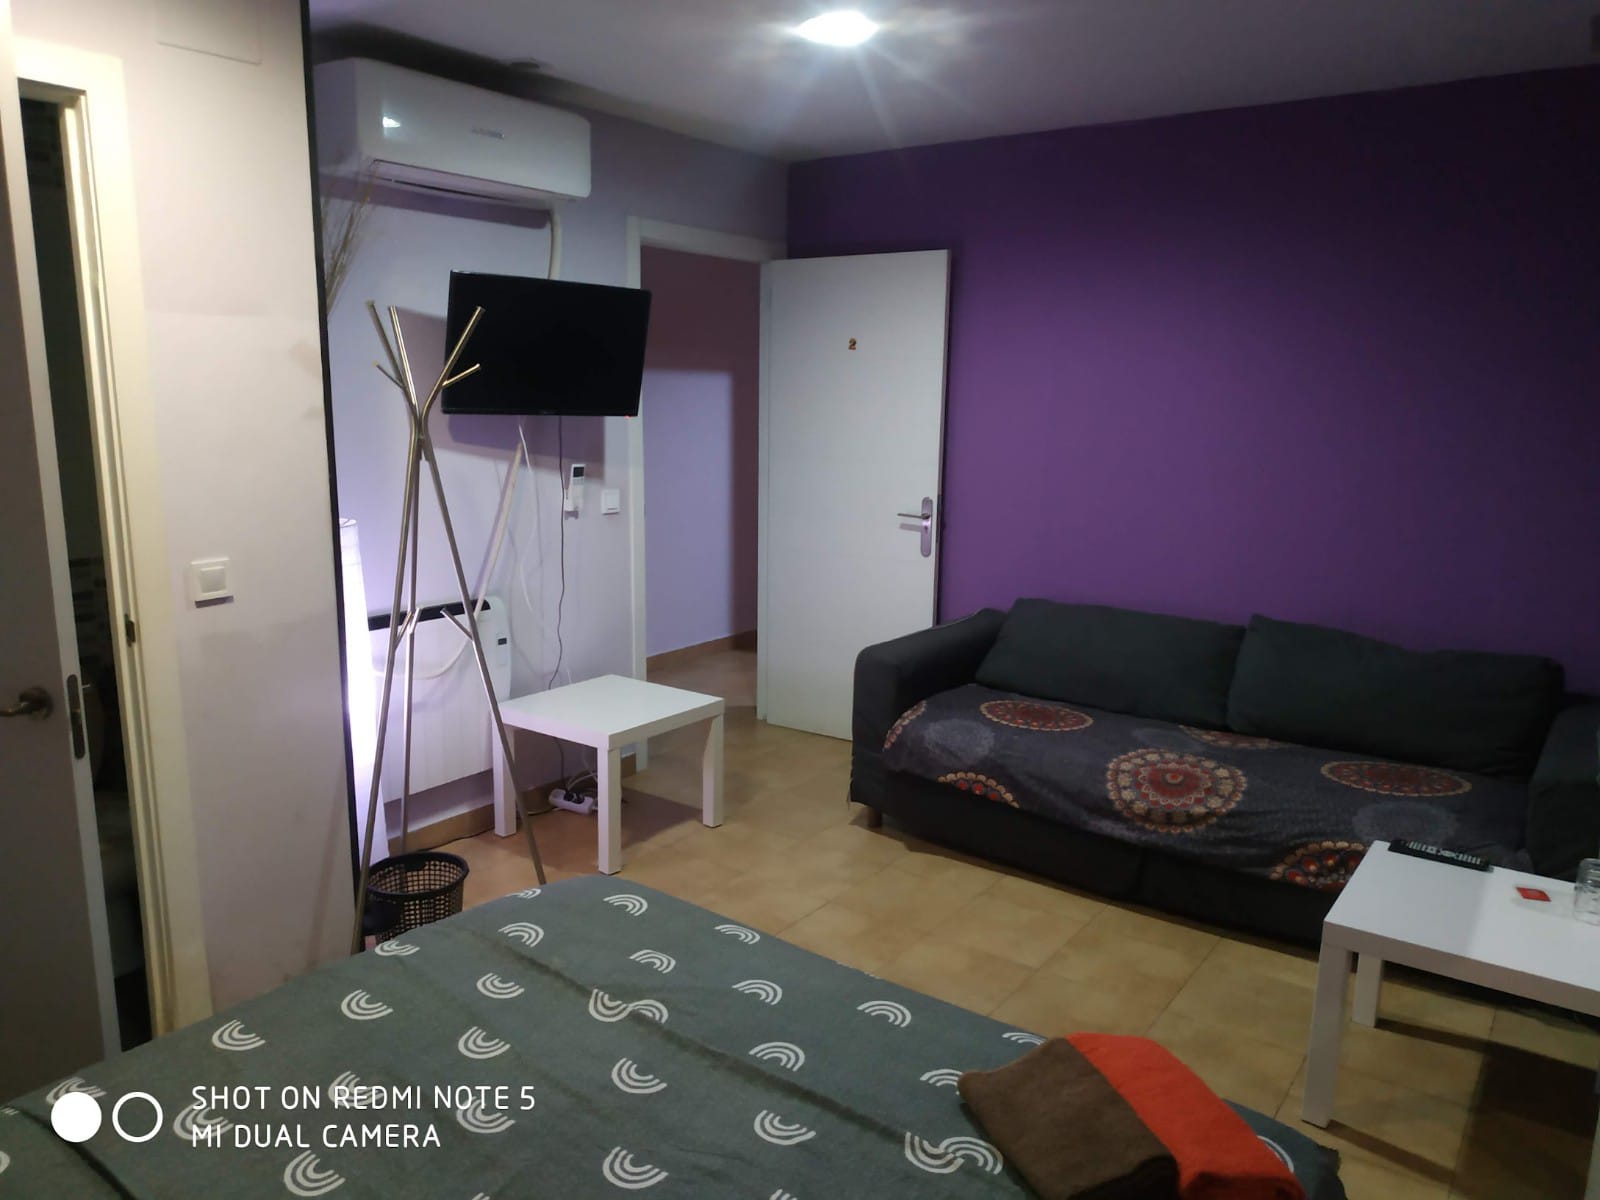 Portazgo Rooms Madrid habitación con cama de estrellas